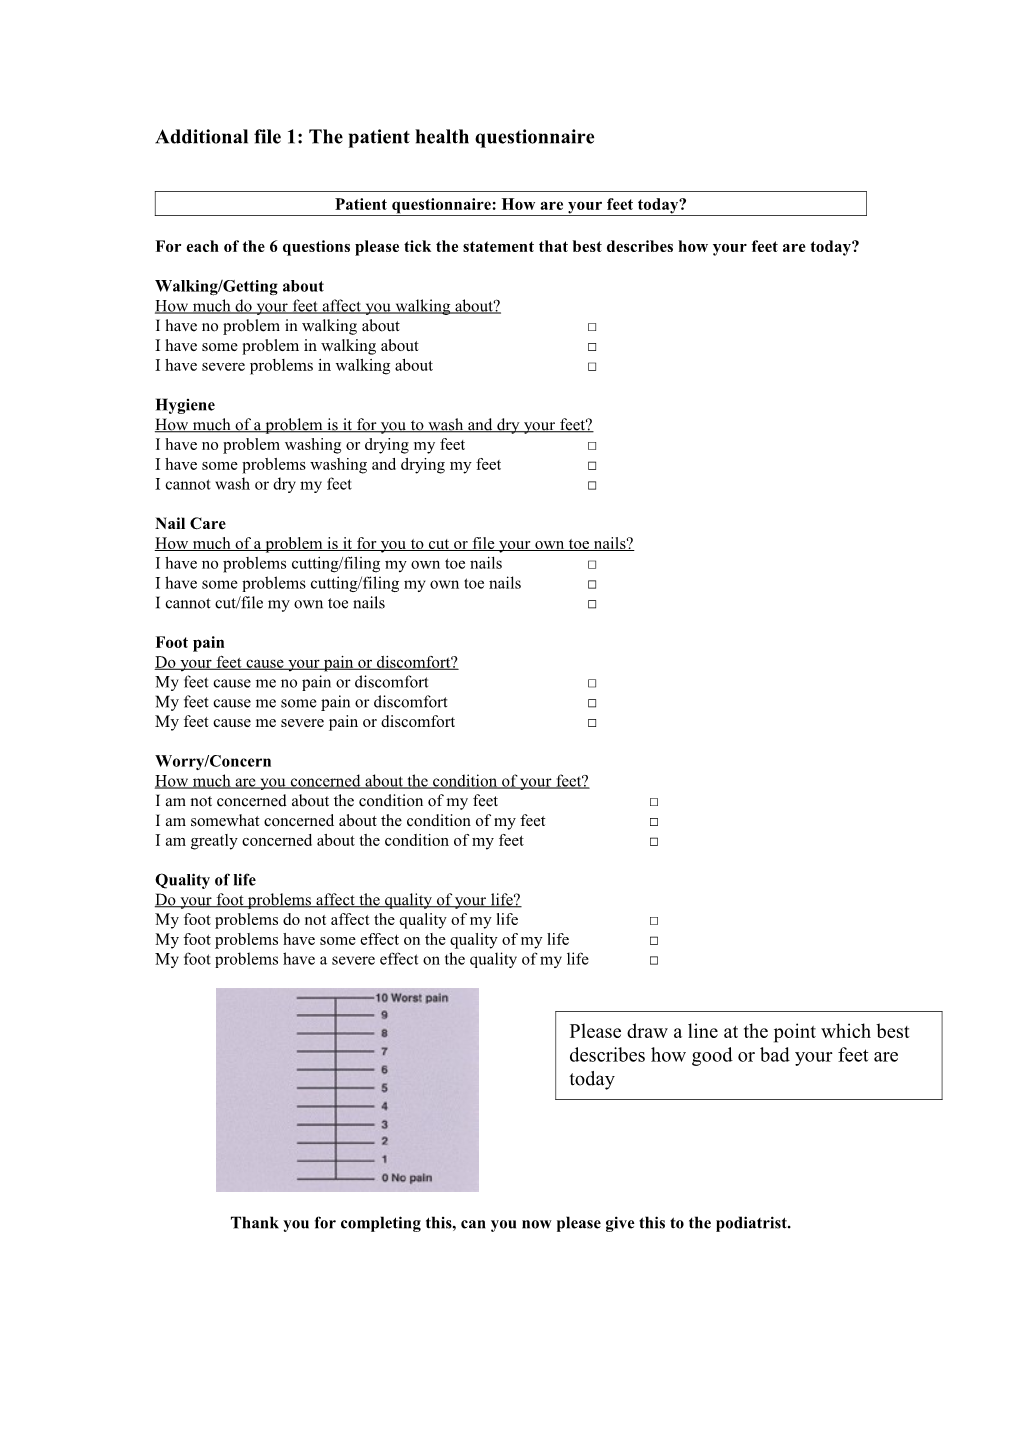 Appendix 1: the Patient Health Questionnaire